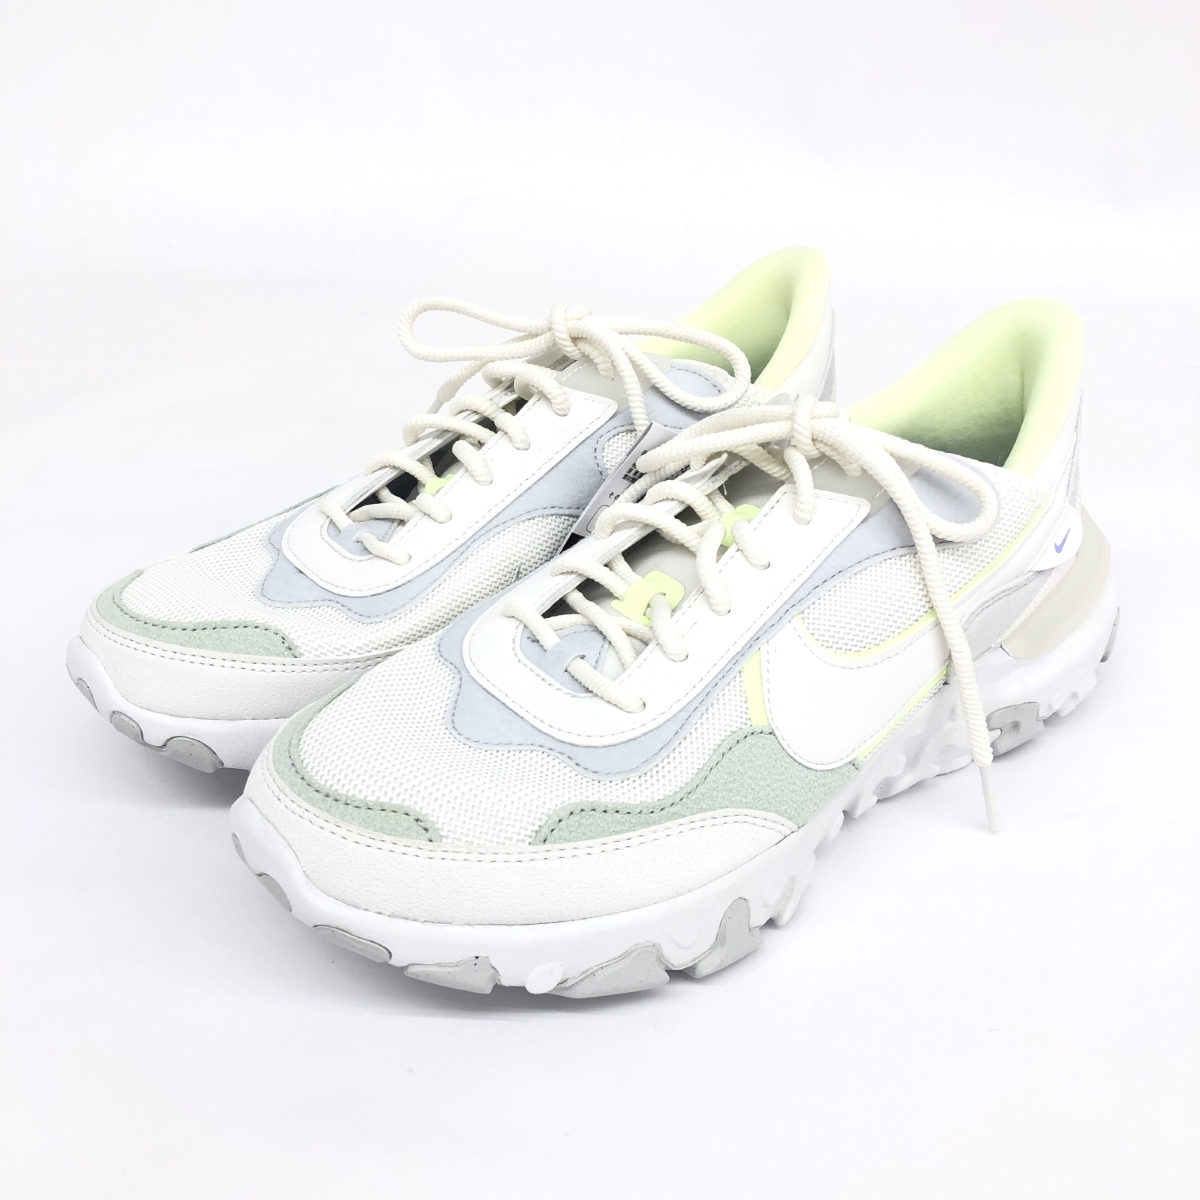 未使用品◆NIKE ナイキ REACT REVISION スニーカー 28.0◆DQ5188-101 ホワイト メンズ 靴 シューズ sneakers